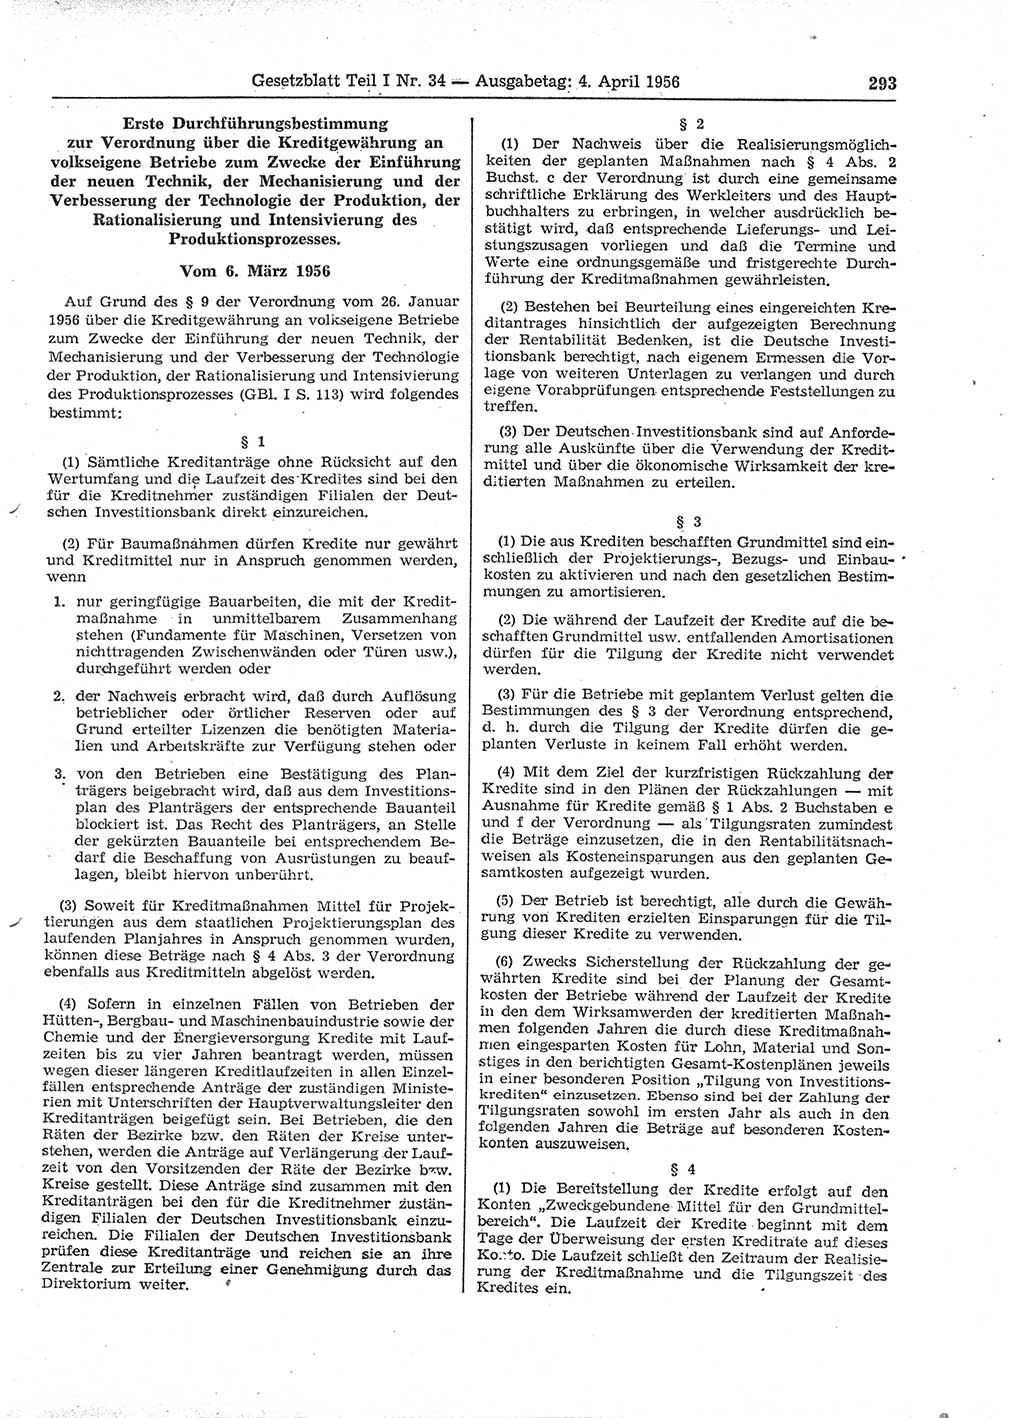 Gesetzblatt (GBl.) der Deutschen Demokratischen Republik (DDR) Teil Ⅰ 1956, Seite 293 (GBl. DDR Ⅰ 1956, S. 293)